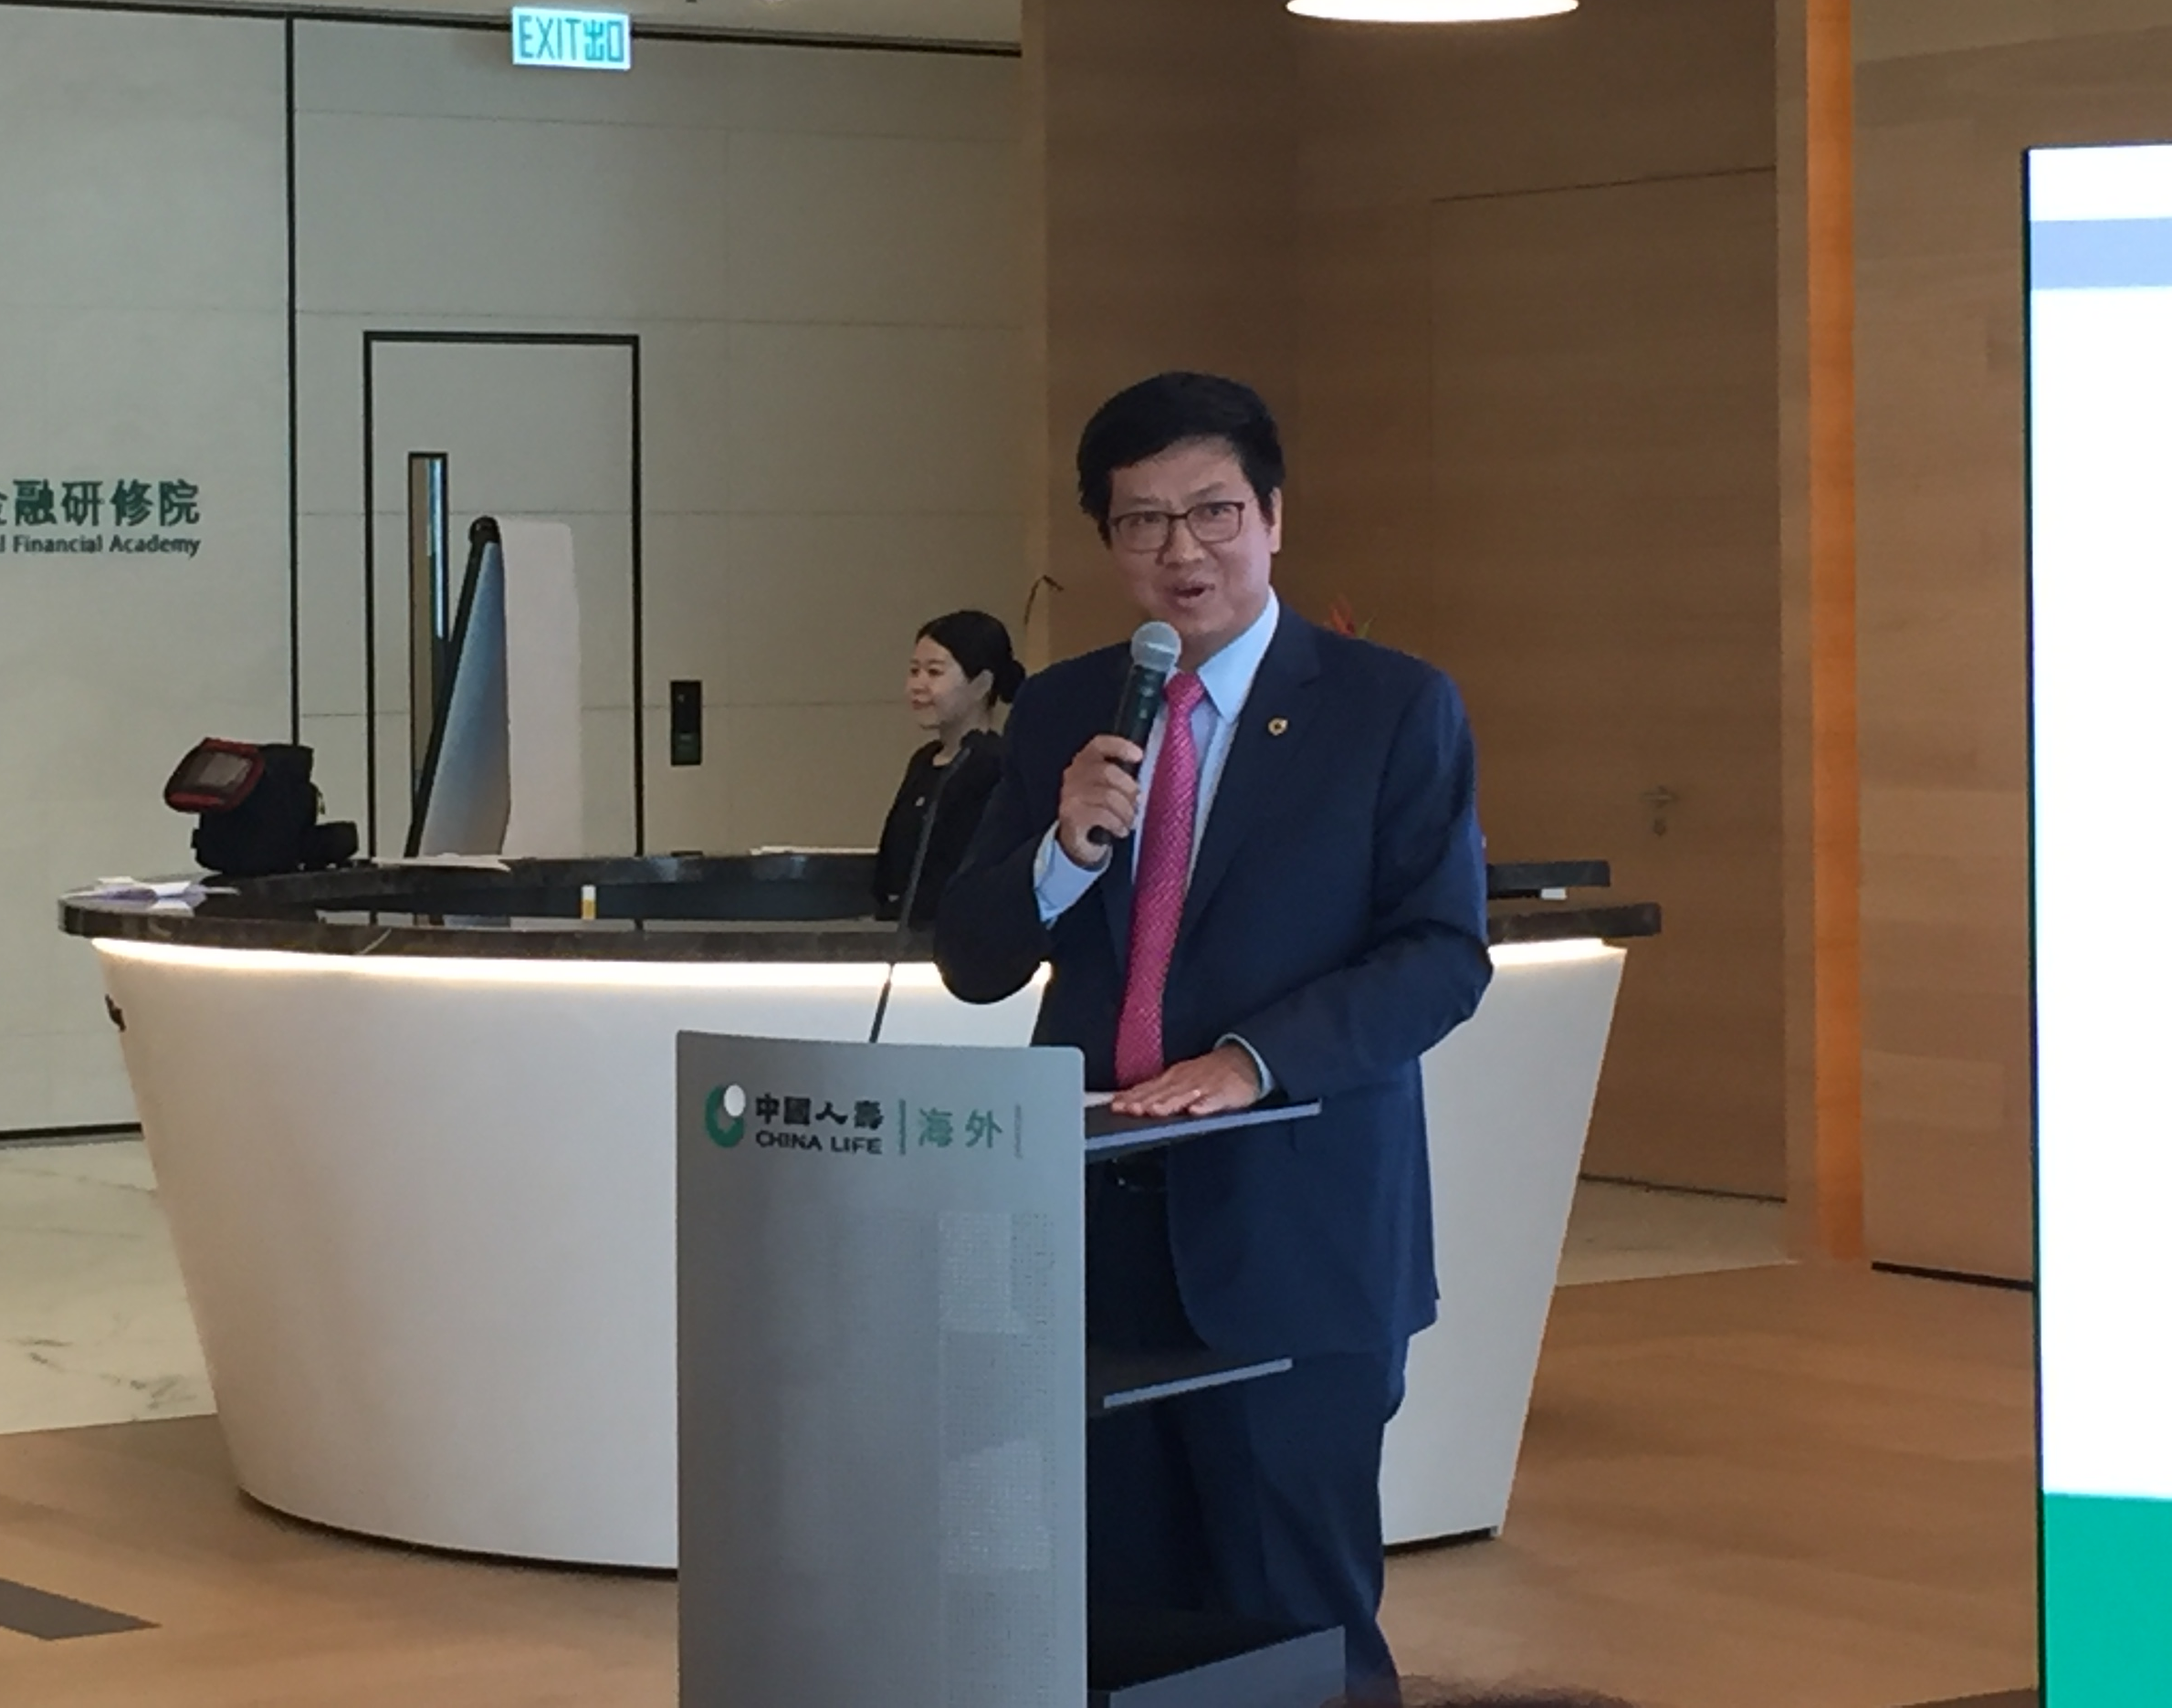 中國人壽（海外）與香港交易所聯辦專題討論午餐會 共同探討香港金融市場發展新動力